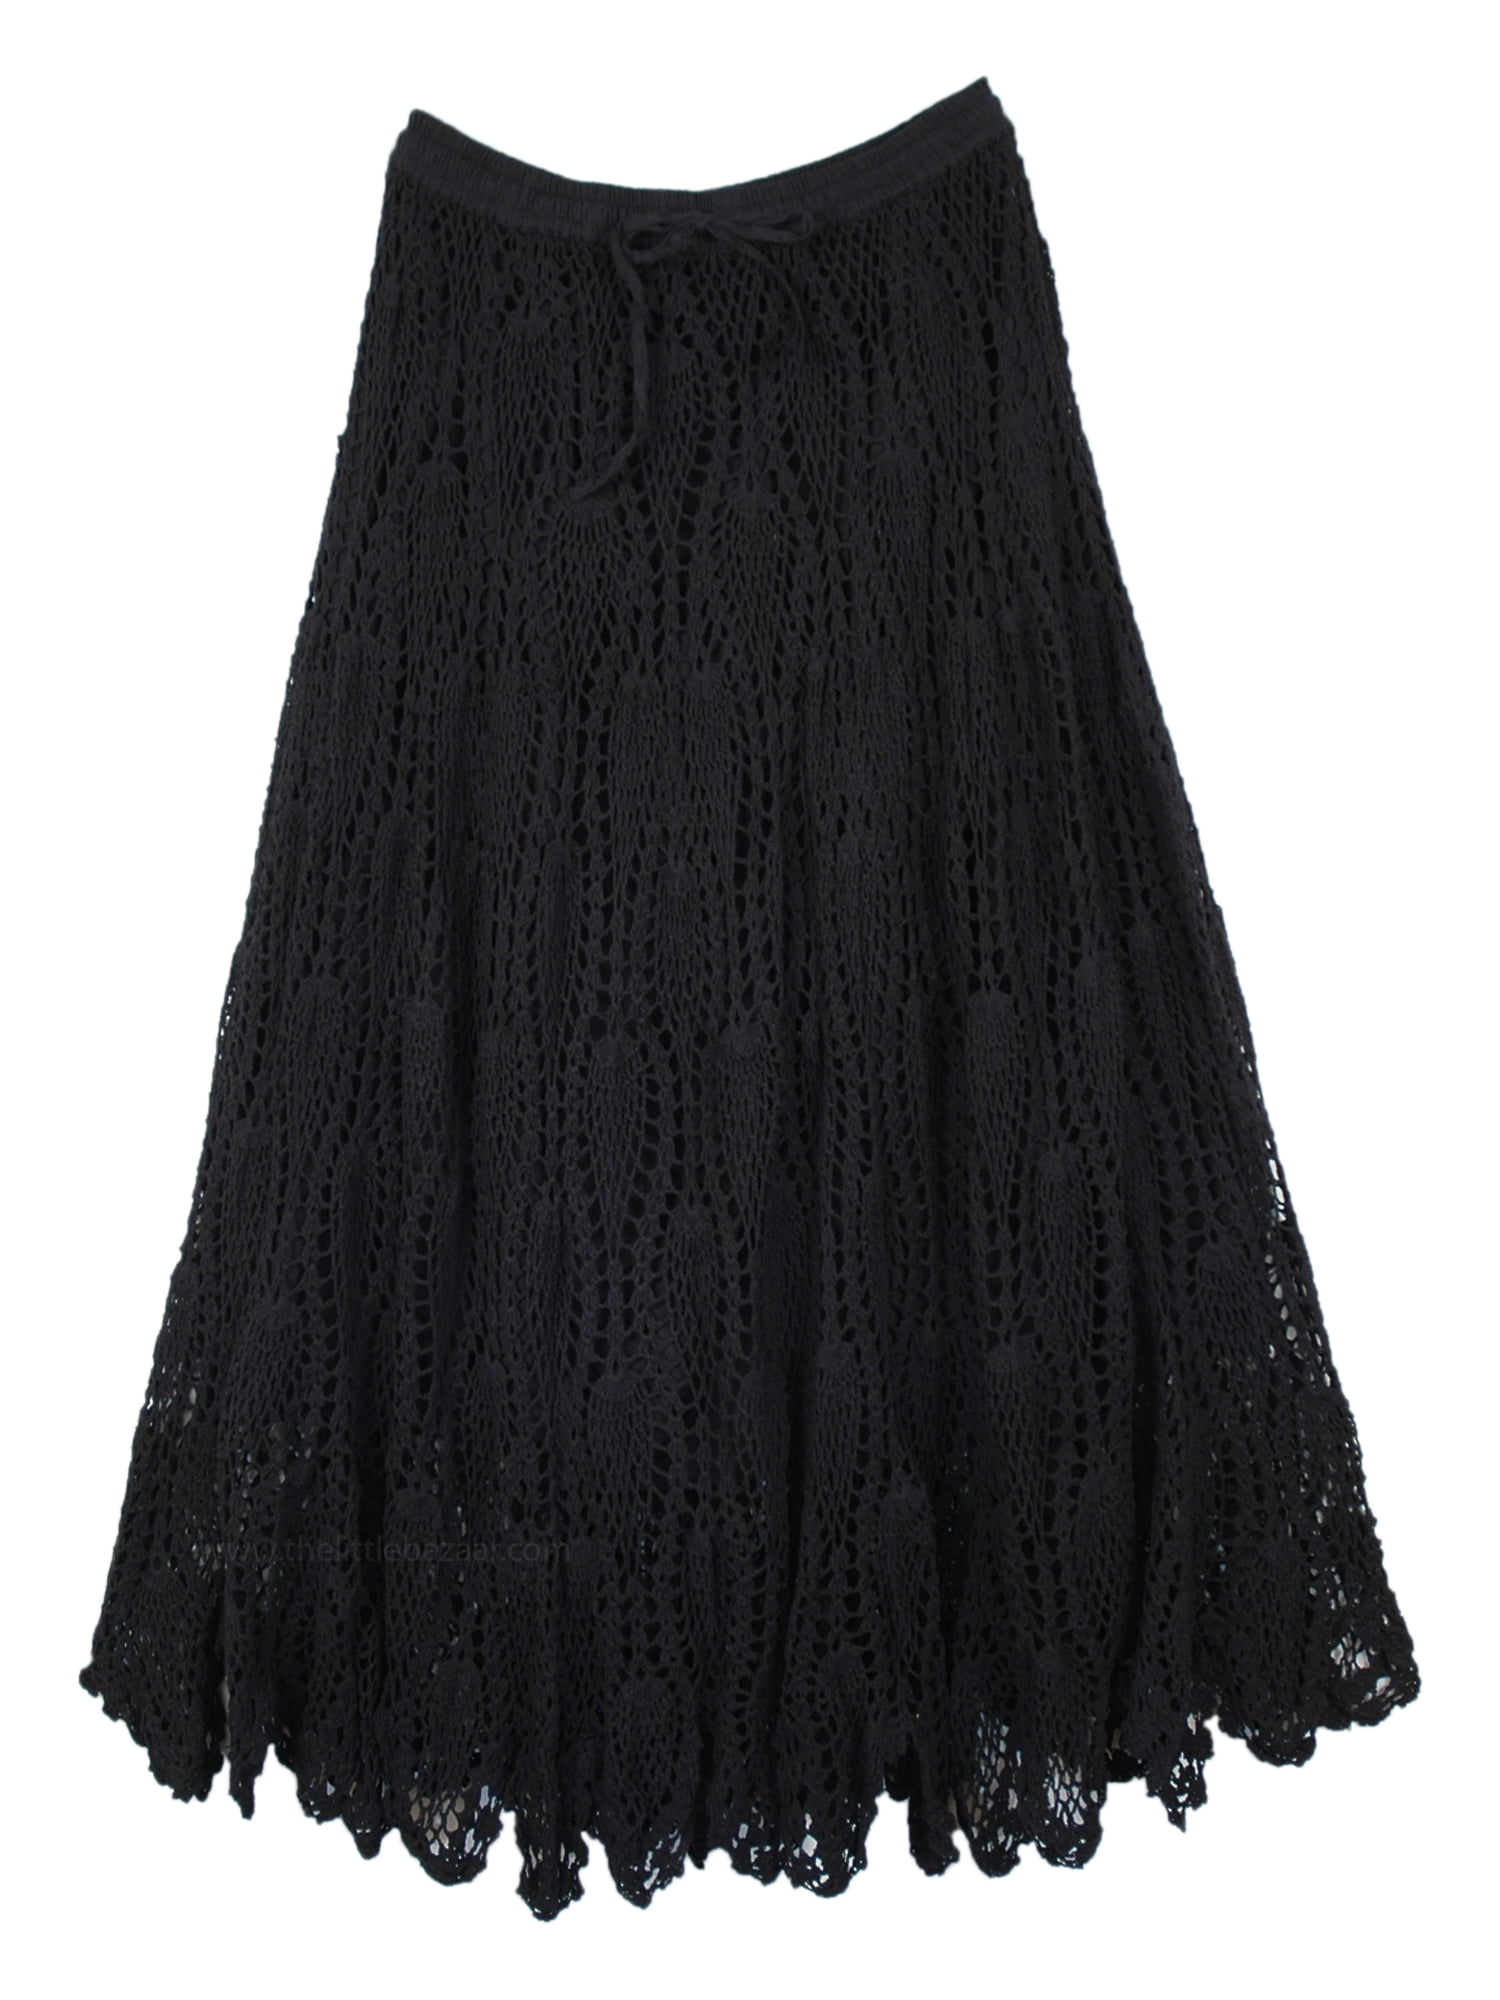 TLB - Knit-Crochet Skirt Crochet Pattern Long Cotton Skirt Viking Black ...